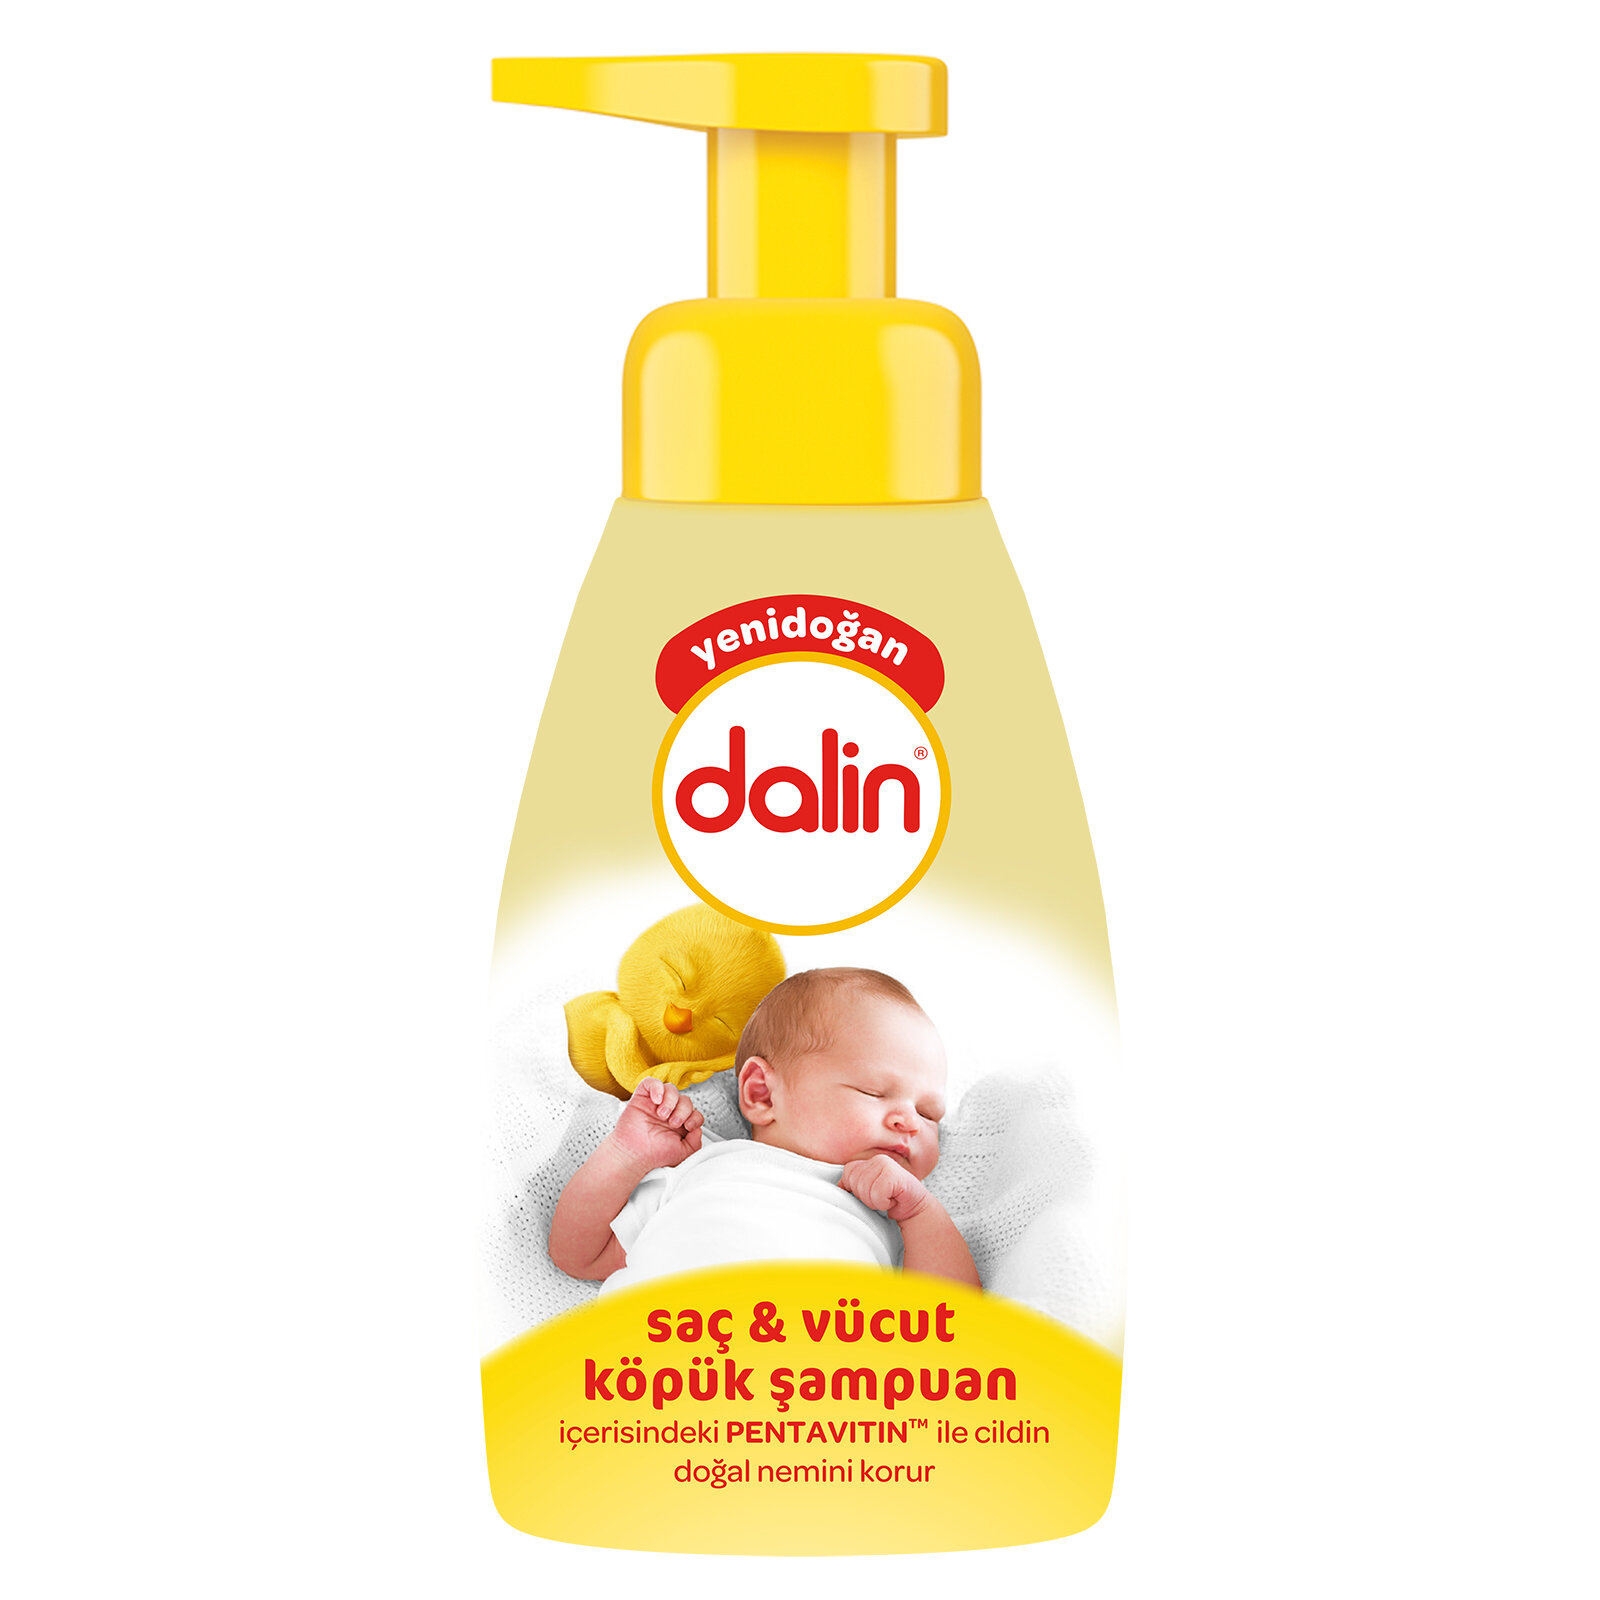 Yenidoğan Saç & Vücut Köpük Şampuan 200 ml